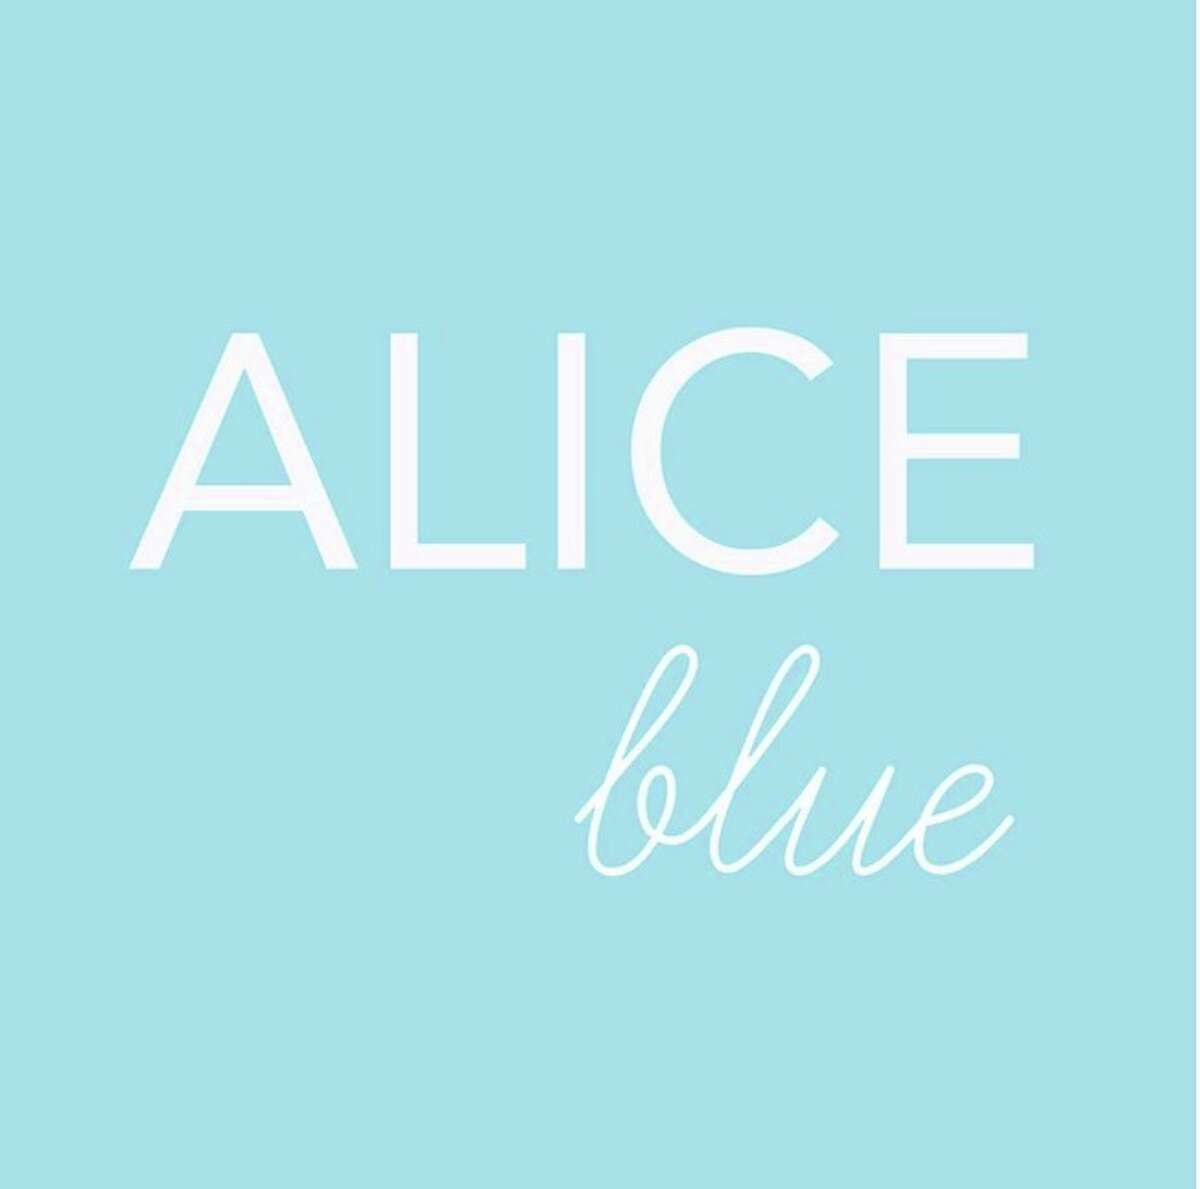 Alice blues